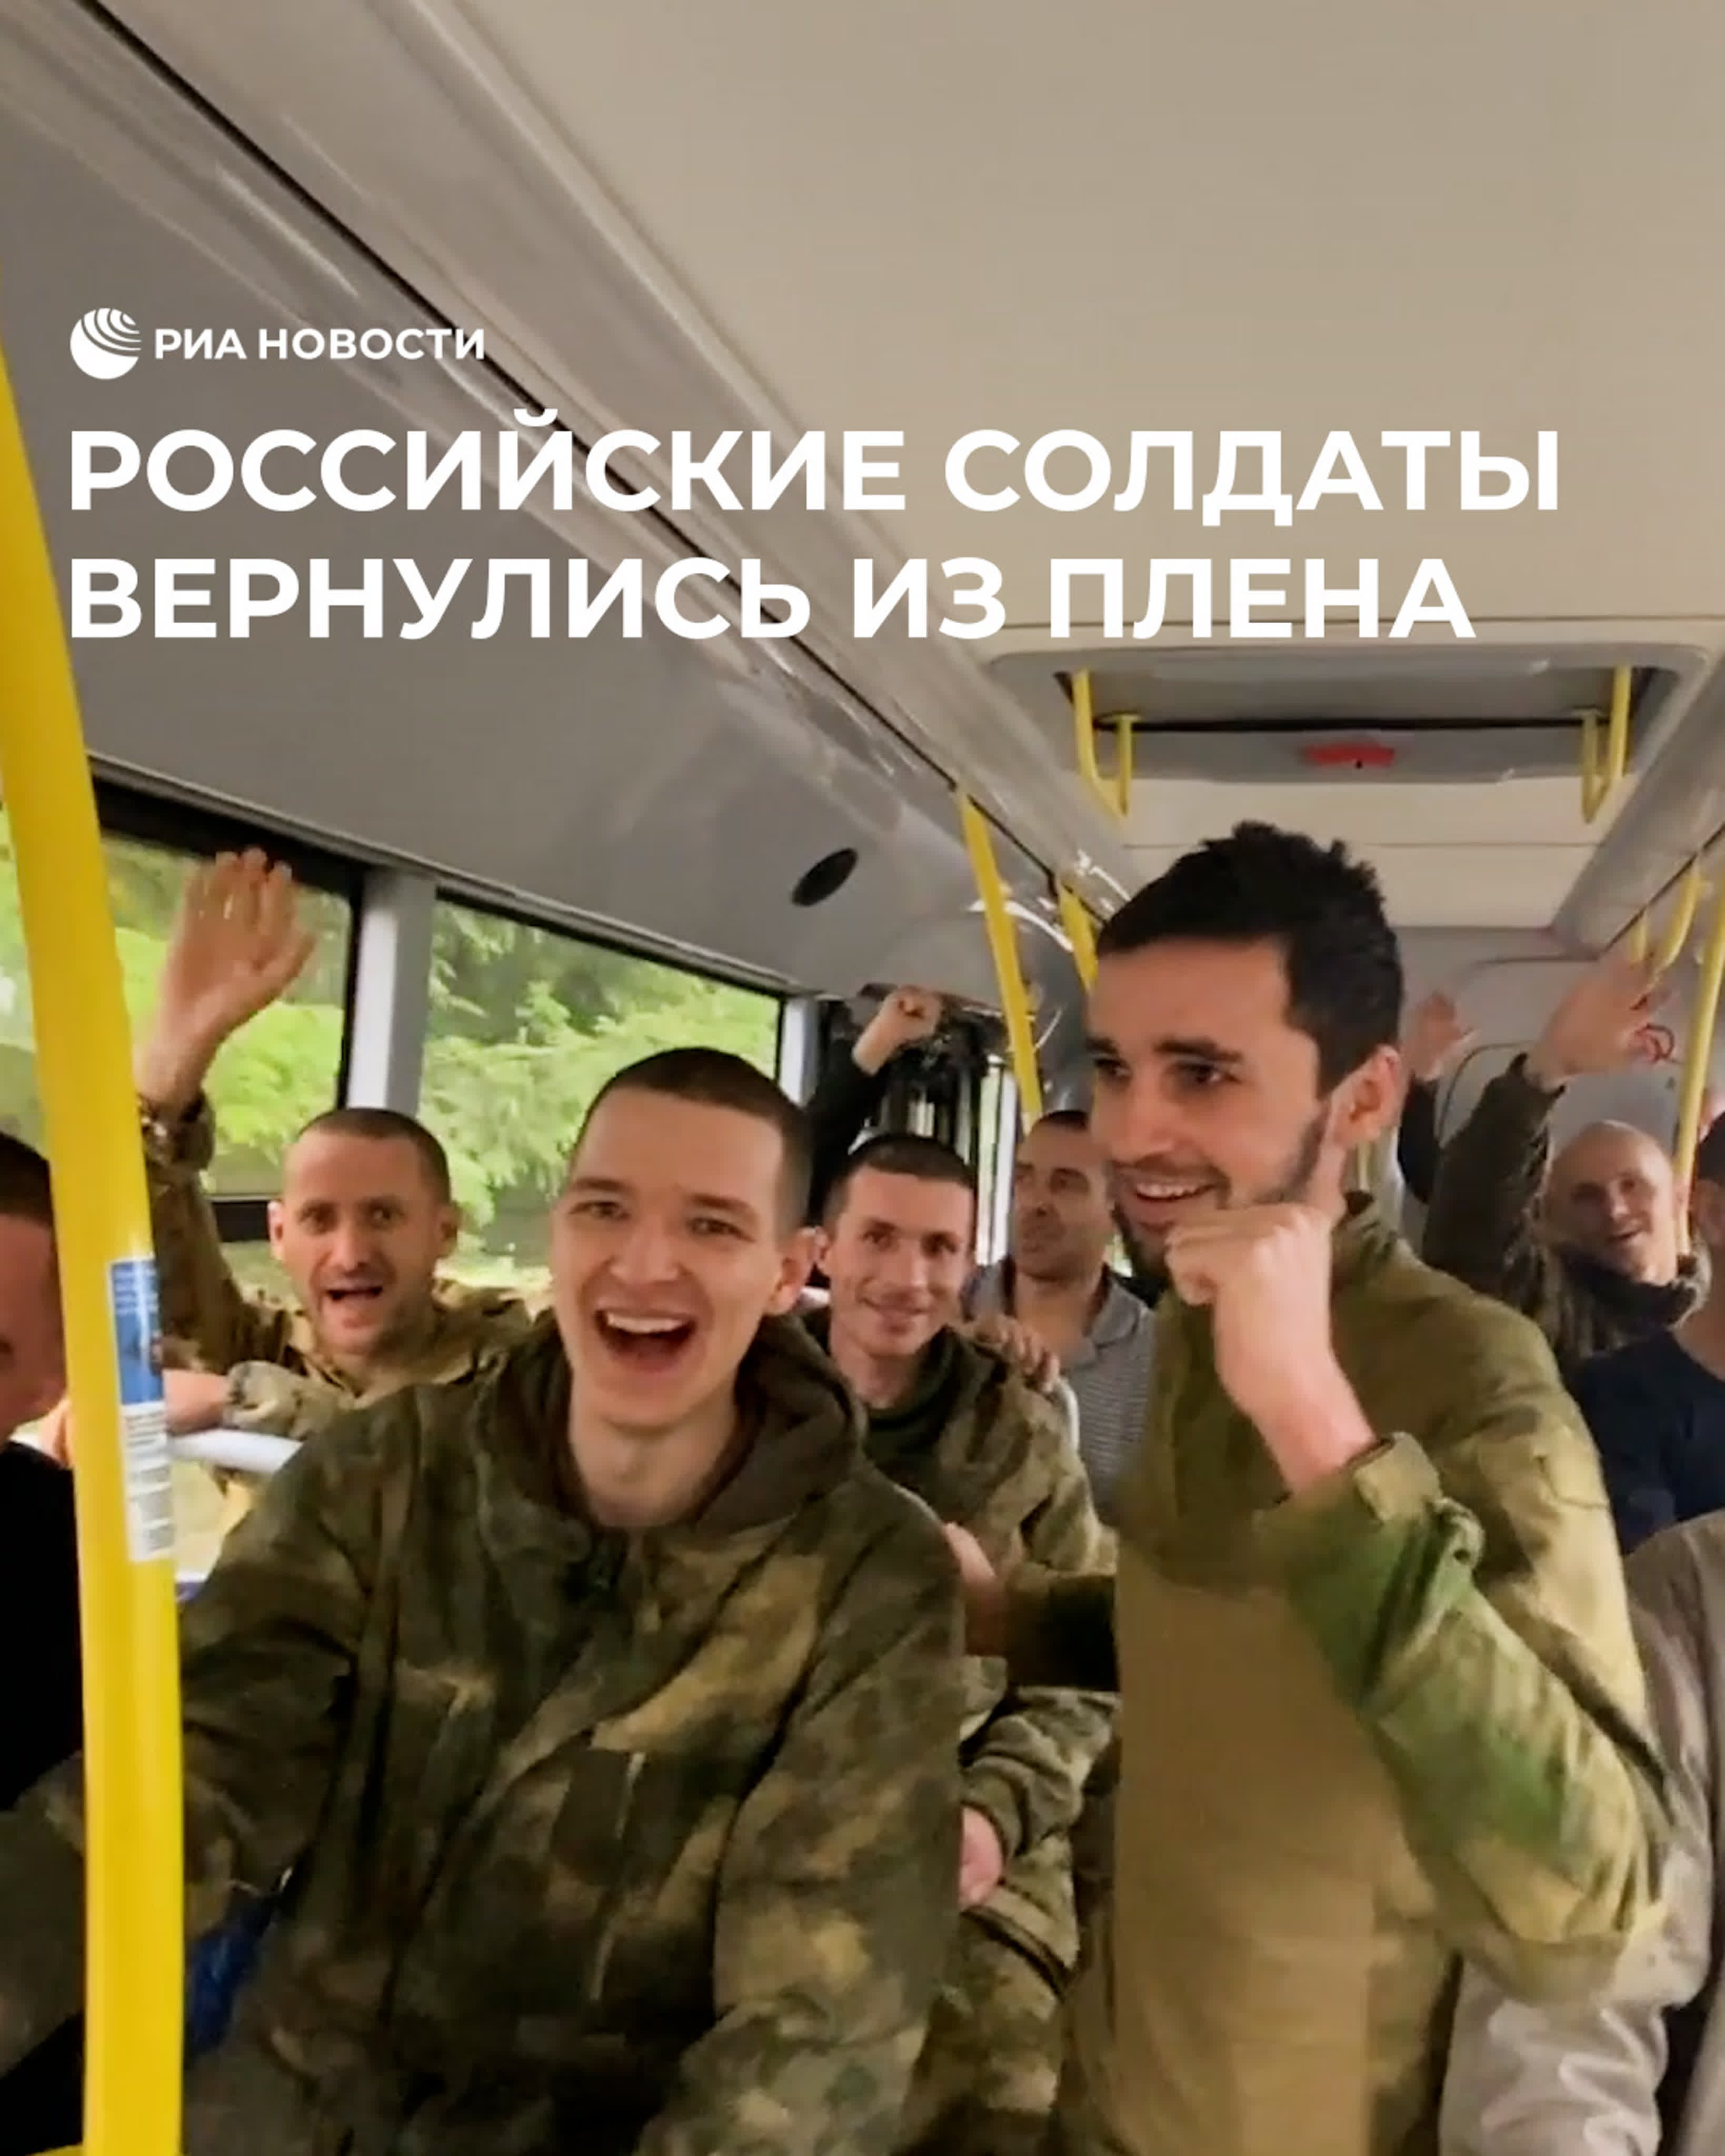 Российские солдаты вернулись из плена watch online